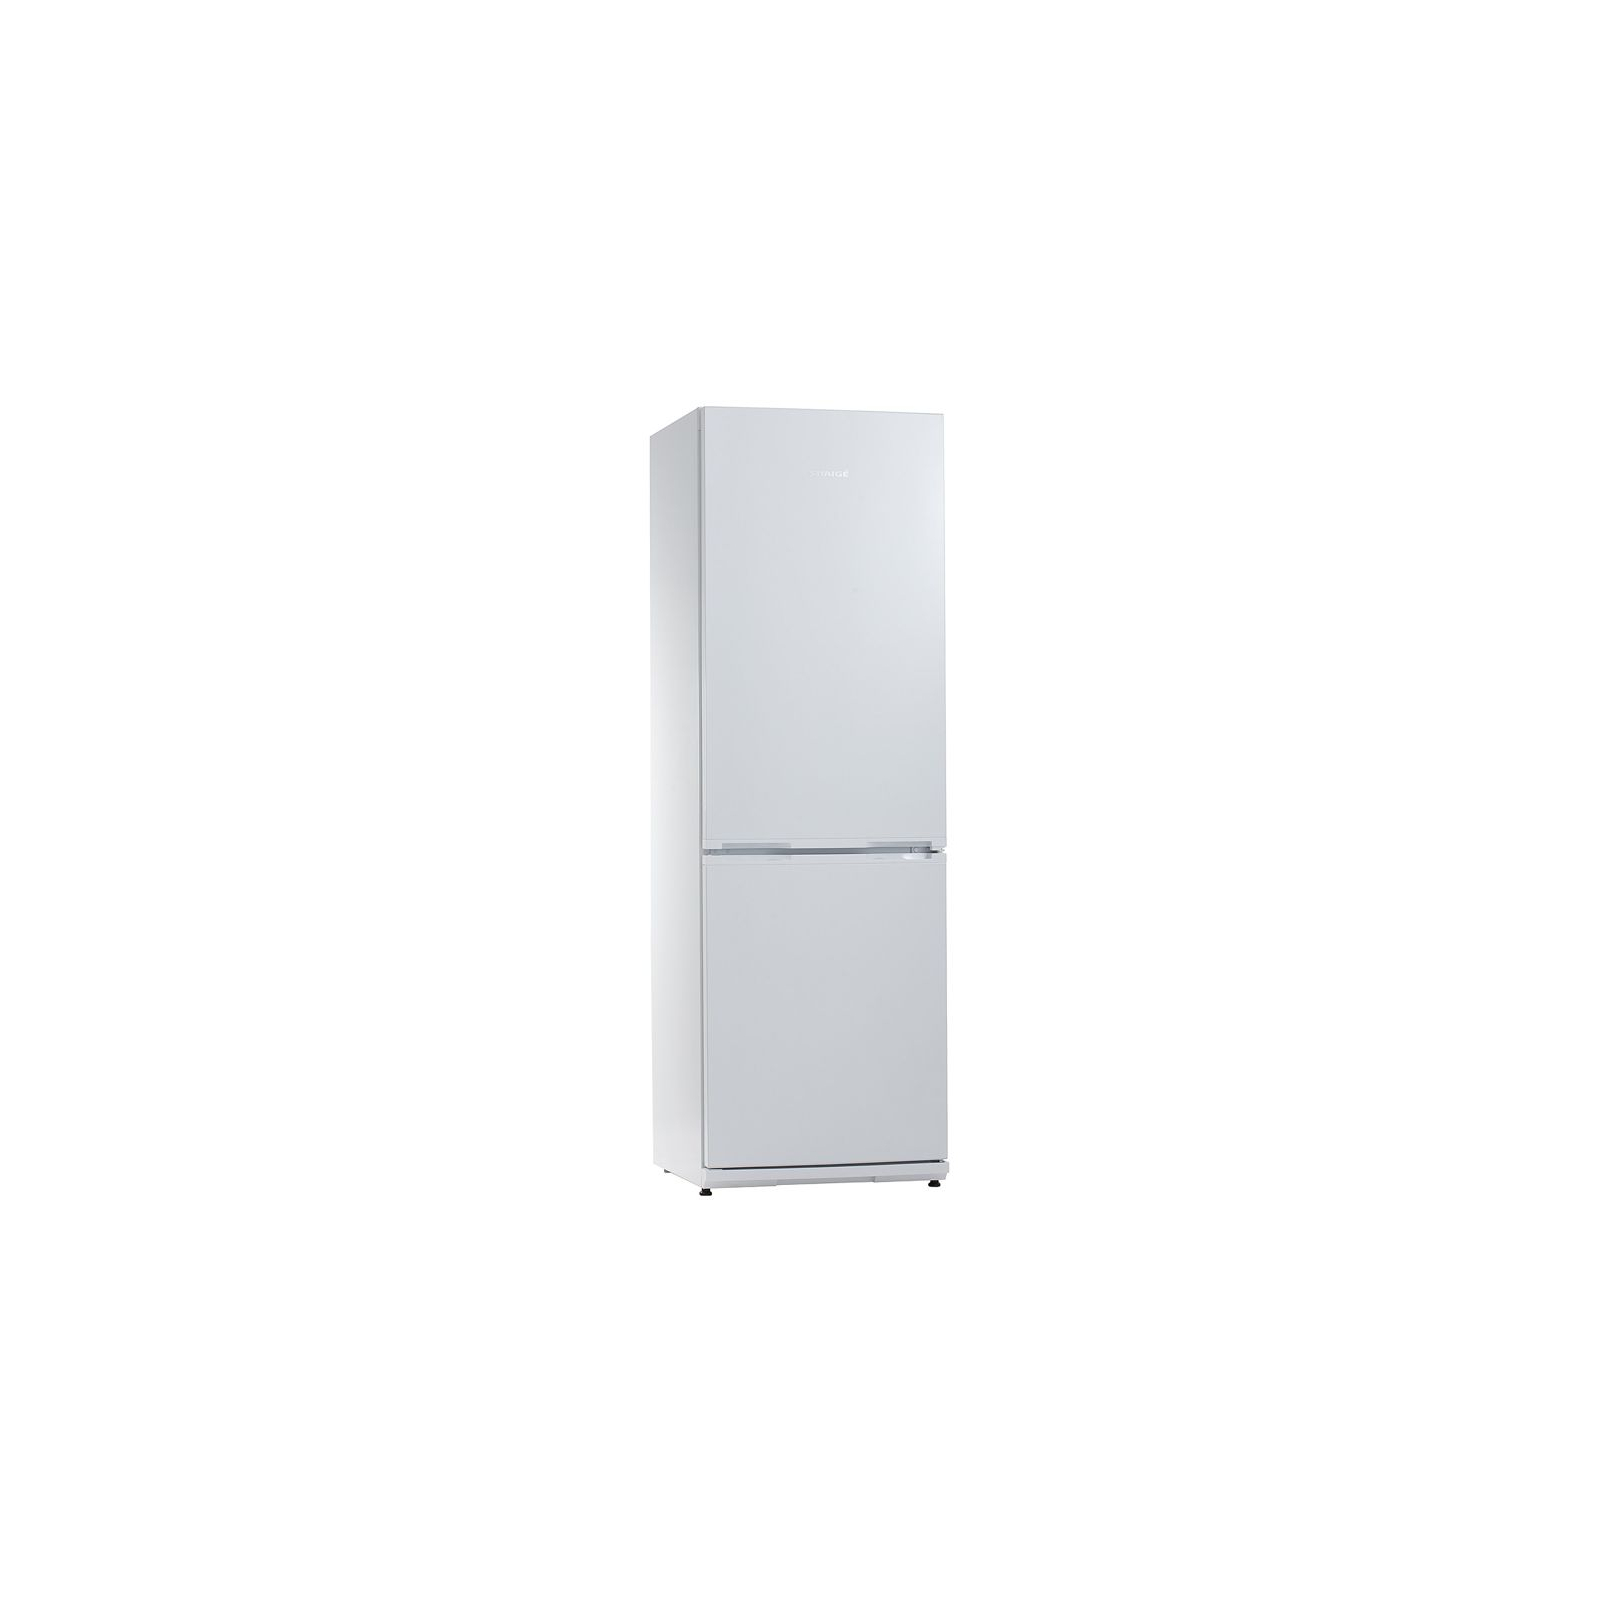 Холодильник Snaige RF34NG-Z10026